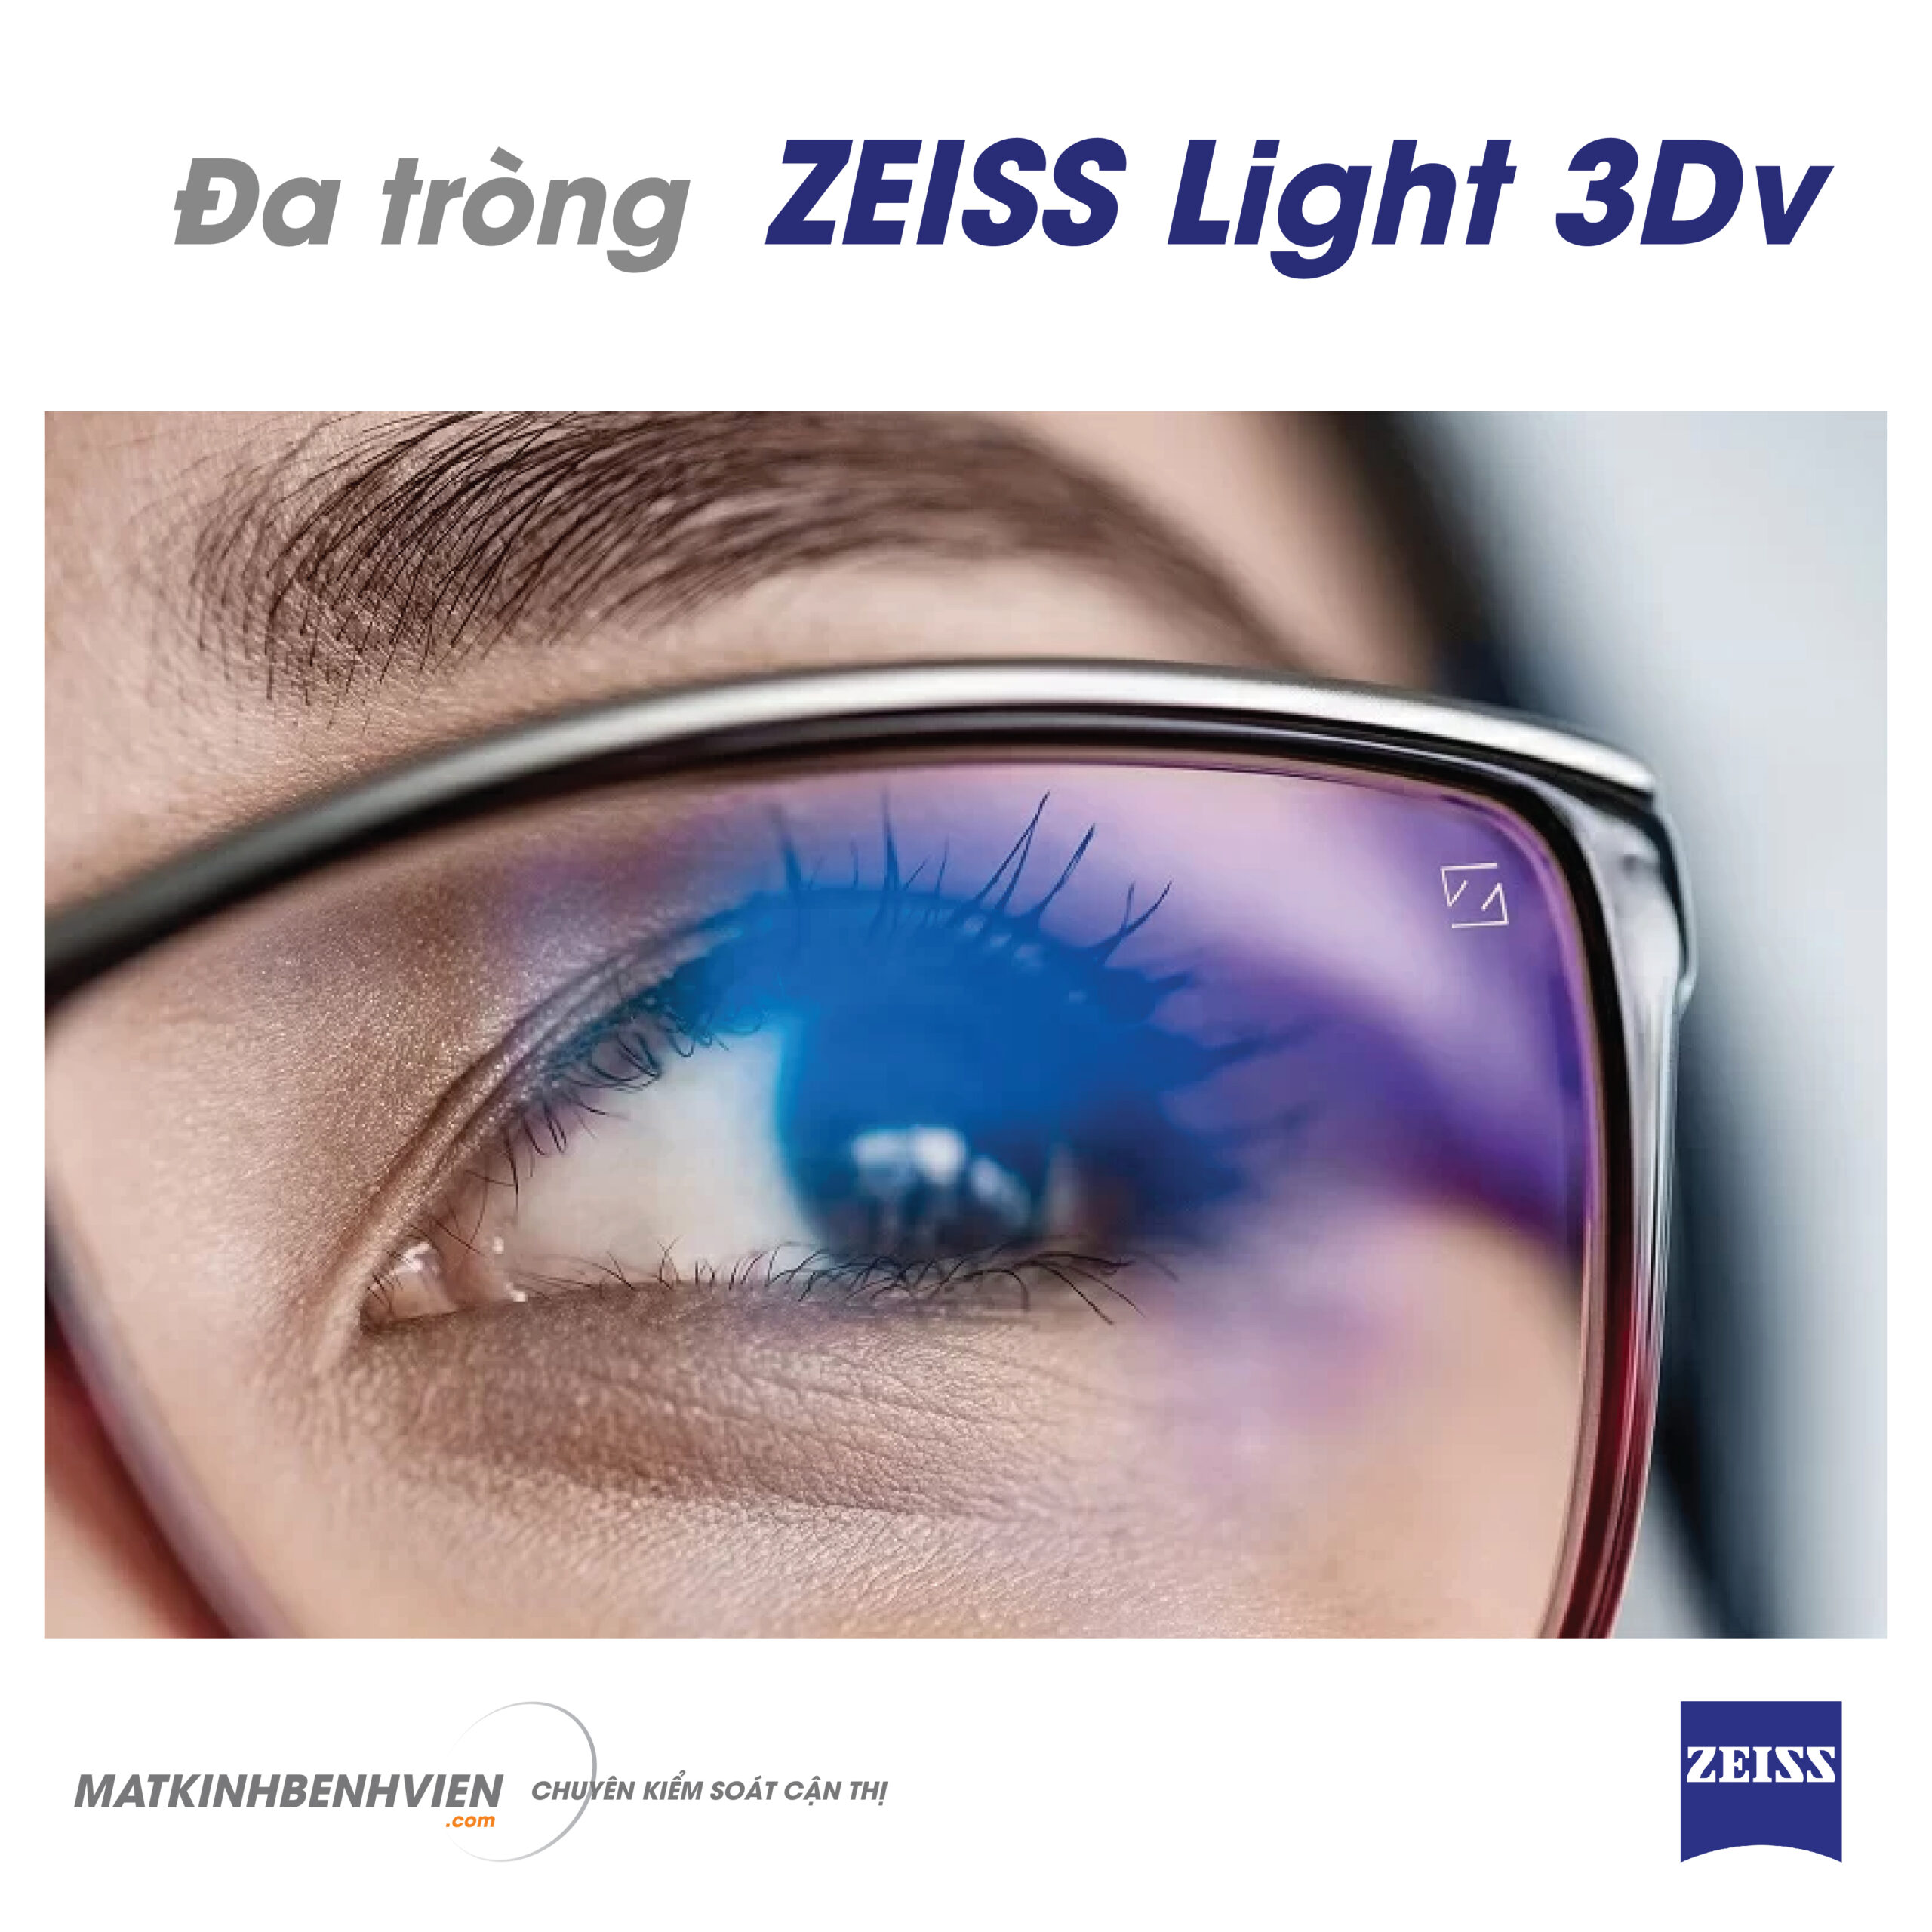 Zeiss Light 3Dv